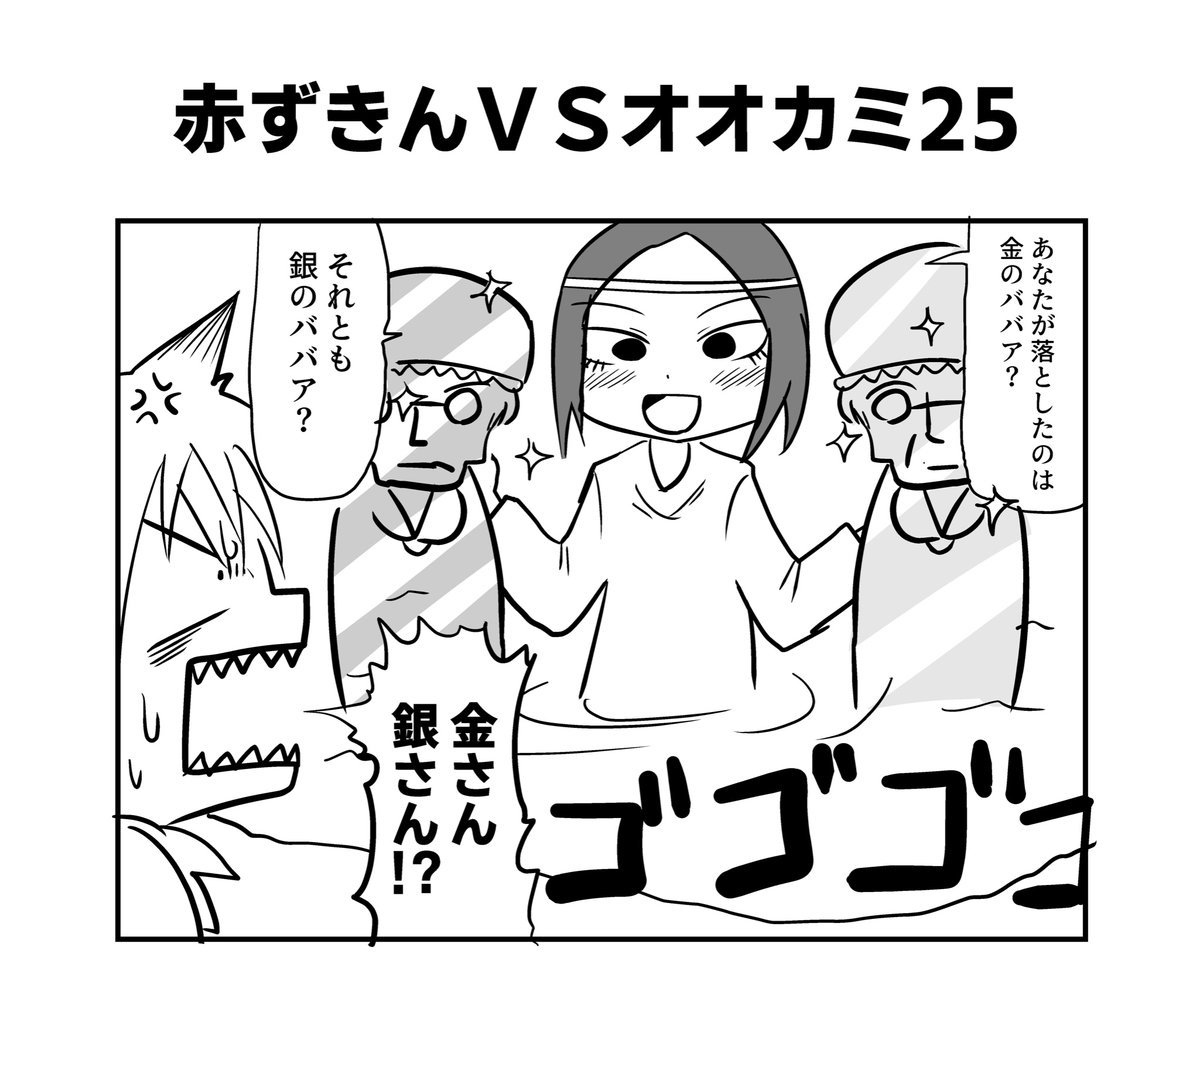 赤ずきんちゃんとクソ雑魚オオカミちゃん22〜25
#へんな漫画 